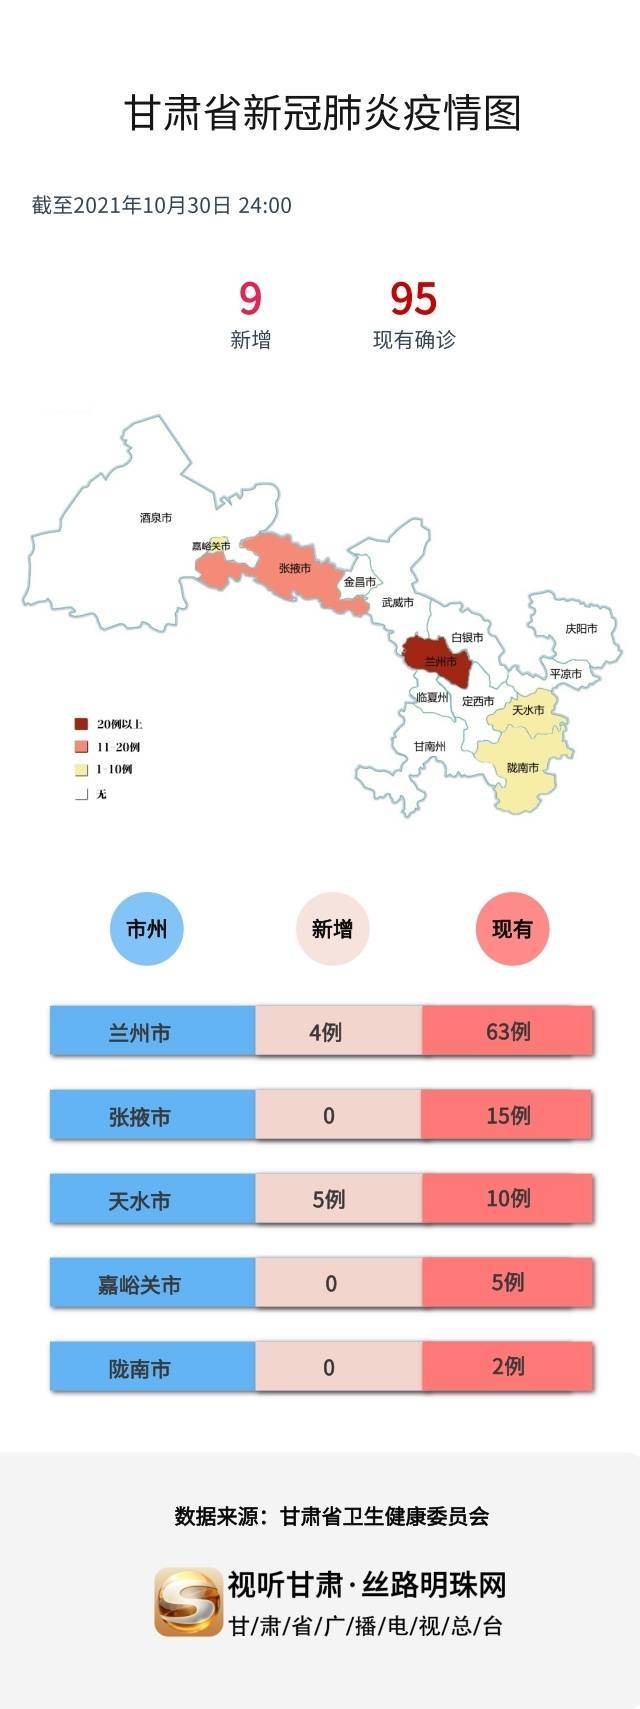 图解丨甘肃省最新疫情分布图截至10月30日24时